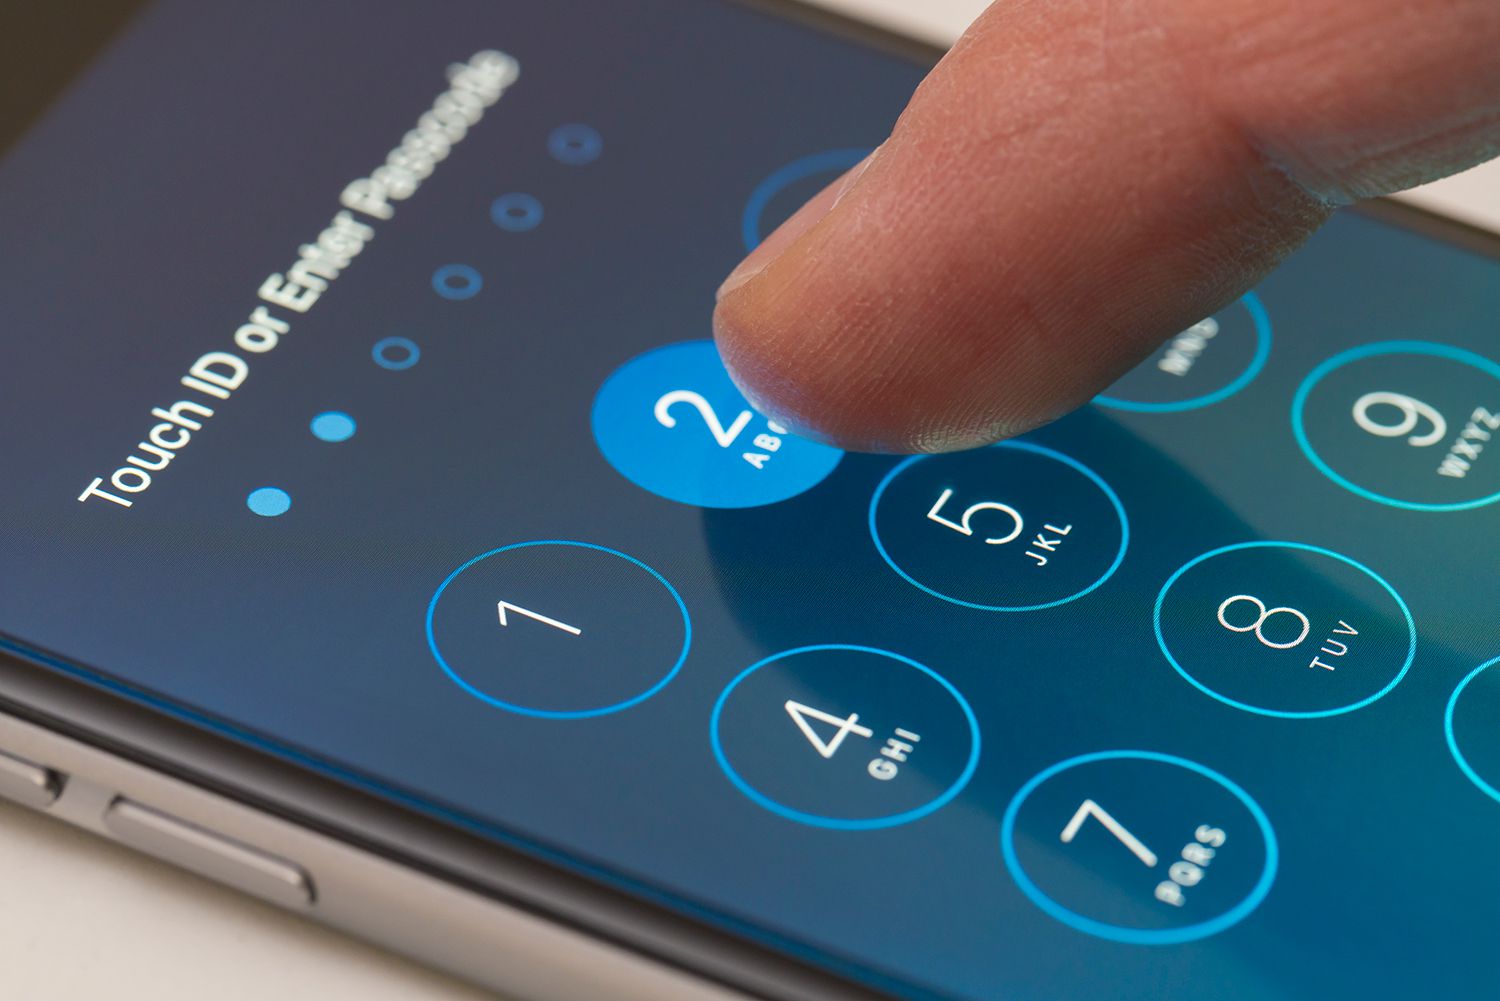 Voer het toegangscodescherm in van een iPhone met iOS 9